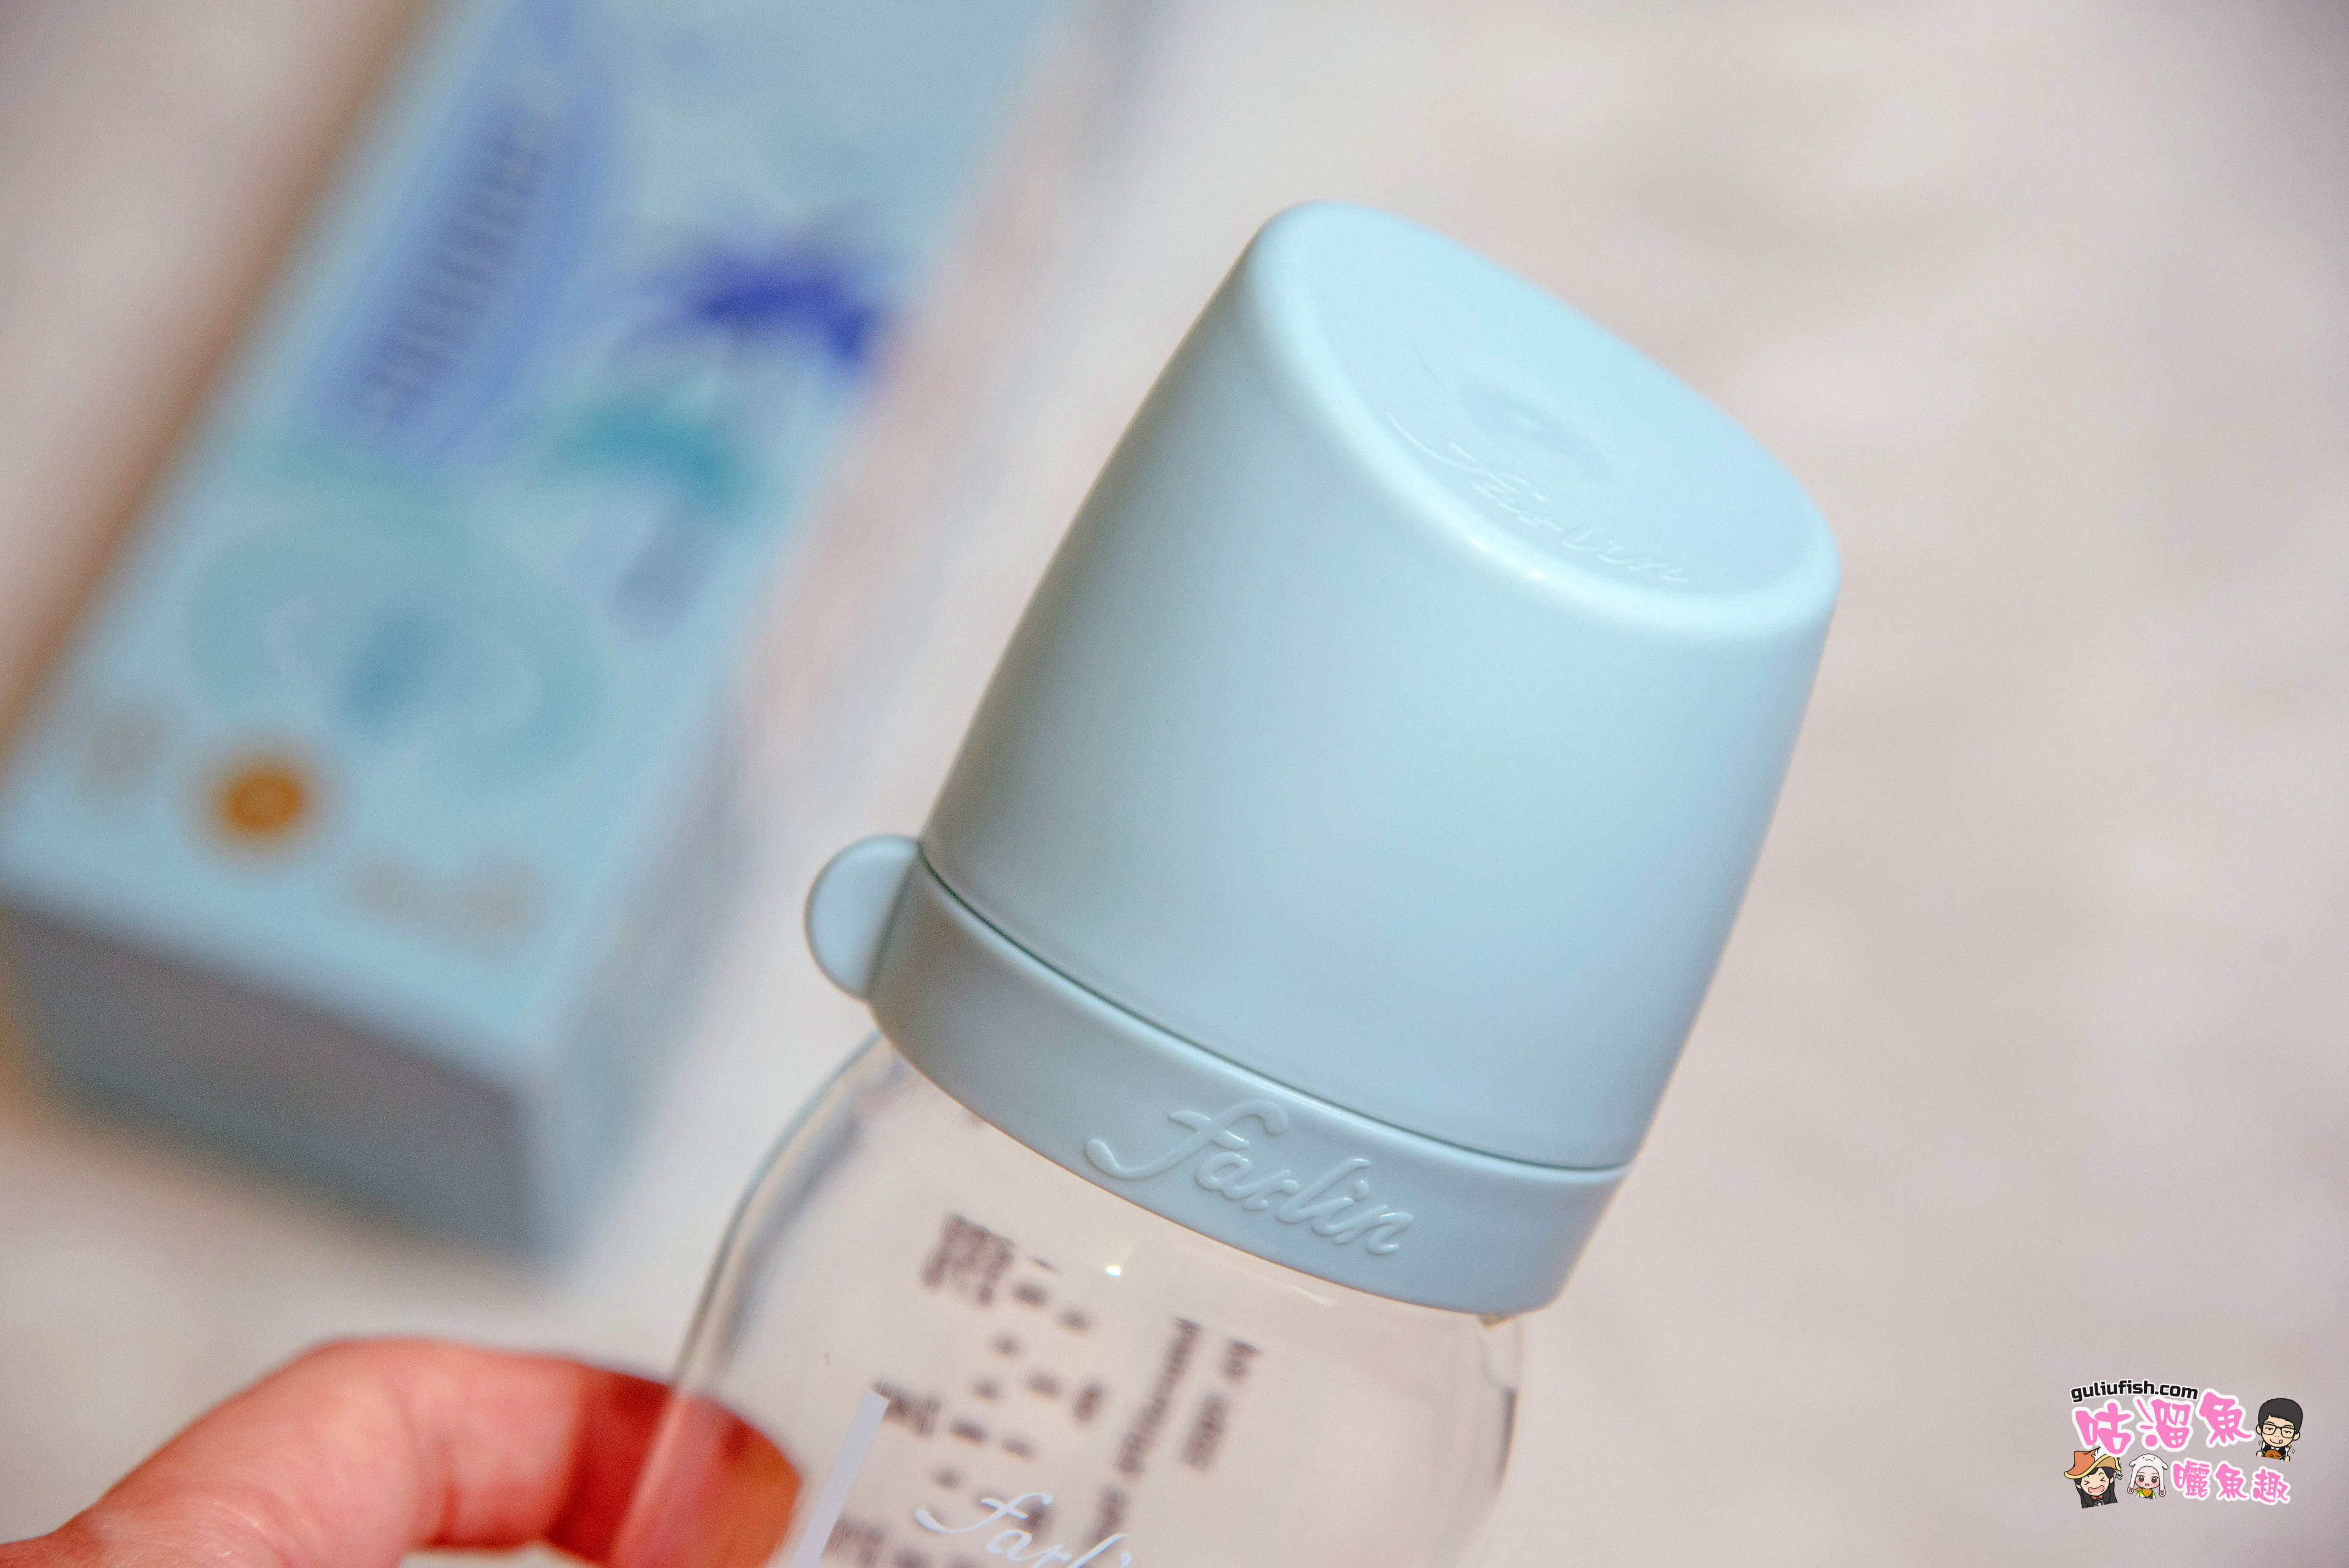 嬰兒用品推薦》FARLIN：植物性蔬果奶瓶清潔劑(Clean 2.0系列) & 城市心旅行寬口徑PA奶瓶心得